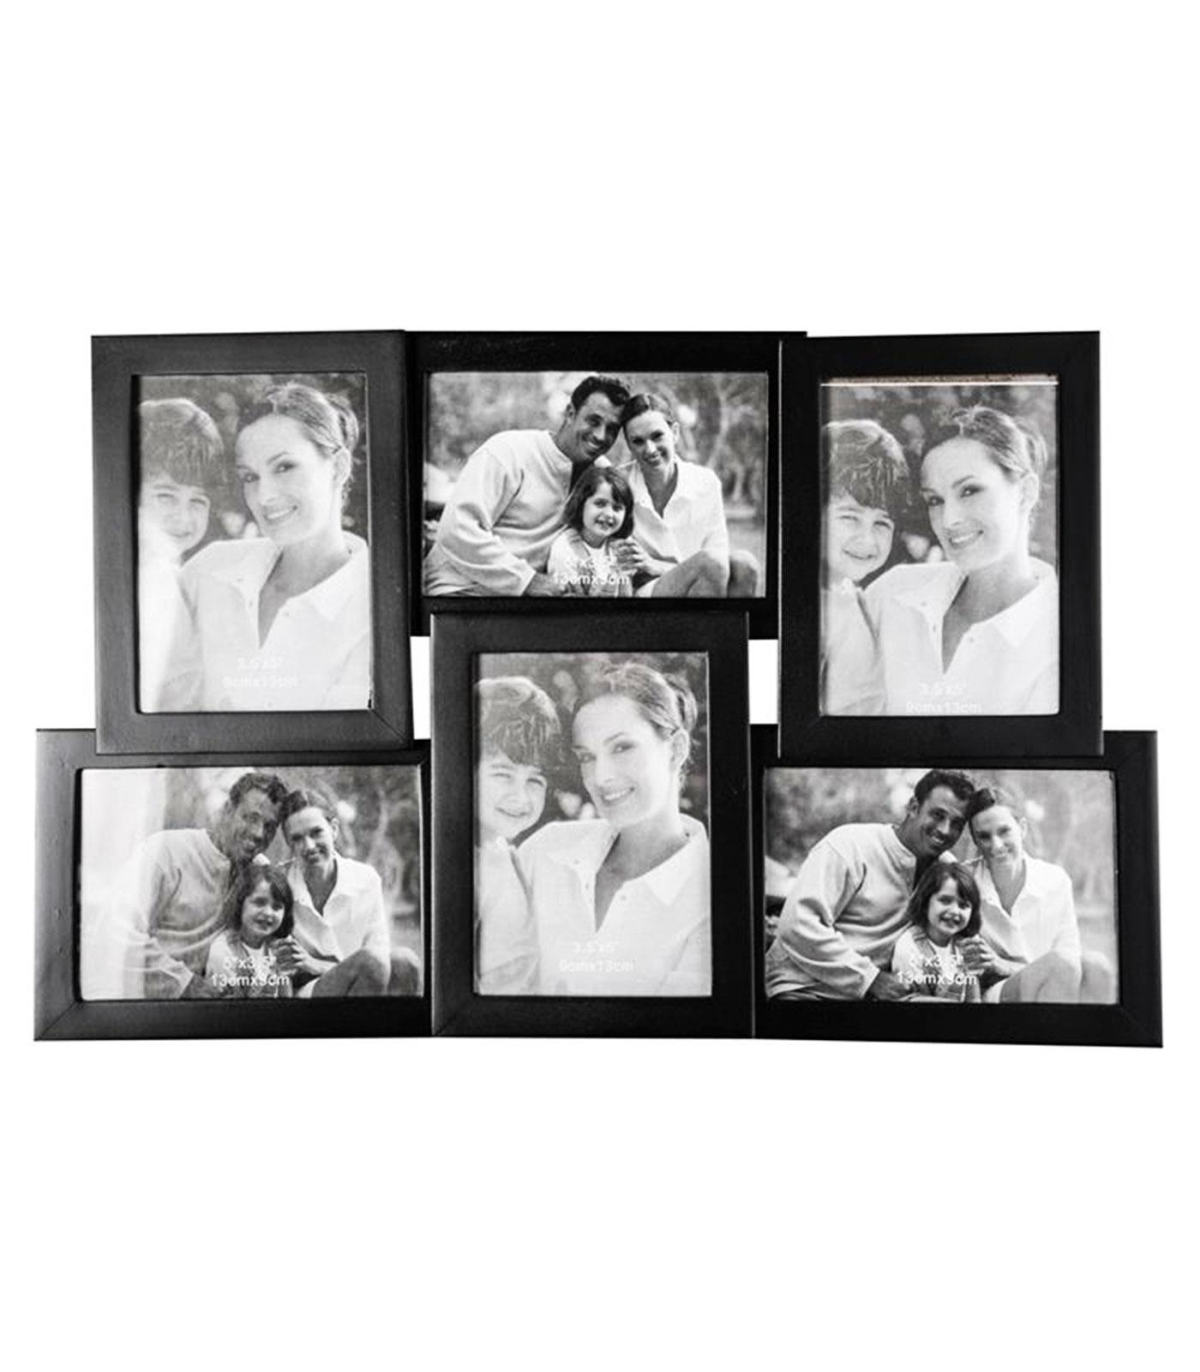  Marco de fotos a cuadros de 5 x 7 pulgadas, marco de fotos de  madera a cuadros en blanco y negro para fotos de 4 x 6 pulgadas con  paspartú o